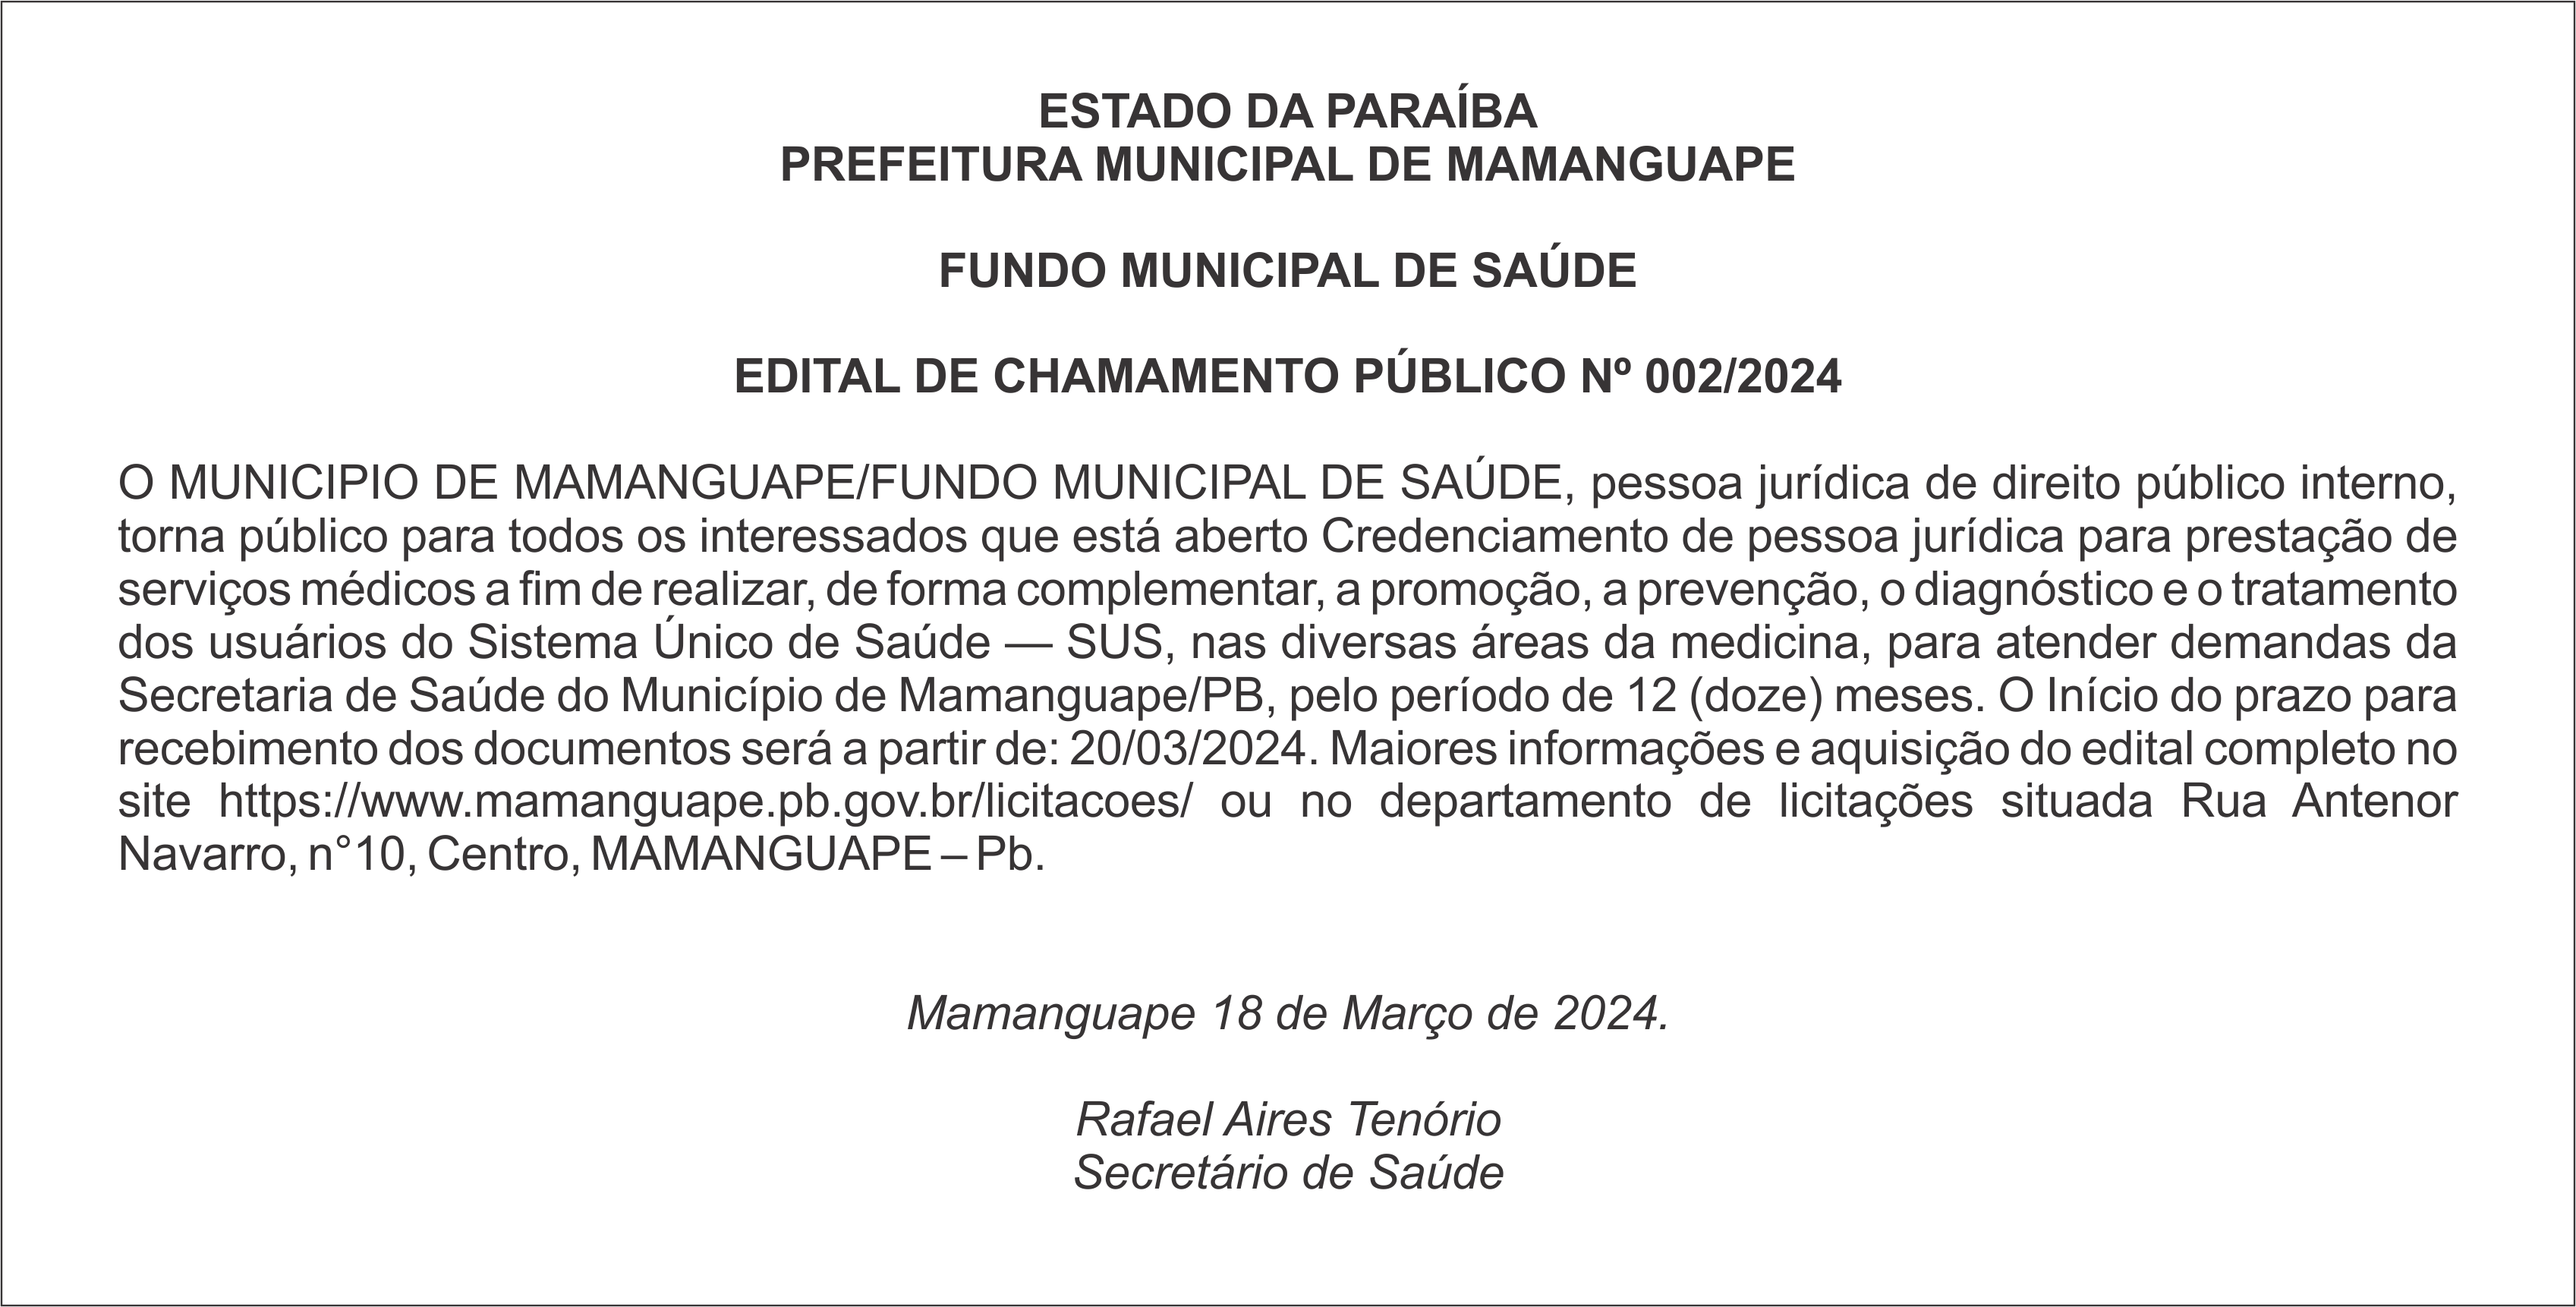 PREFEITURA MUNICIPAL DE MAMANGUAPE – EDITAL DE CHAMAMENTO PÚBLICO Nº 002/2024